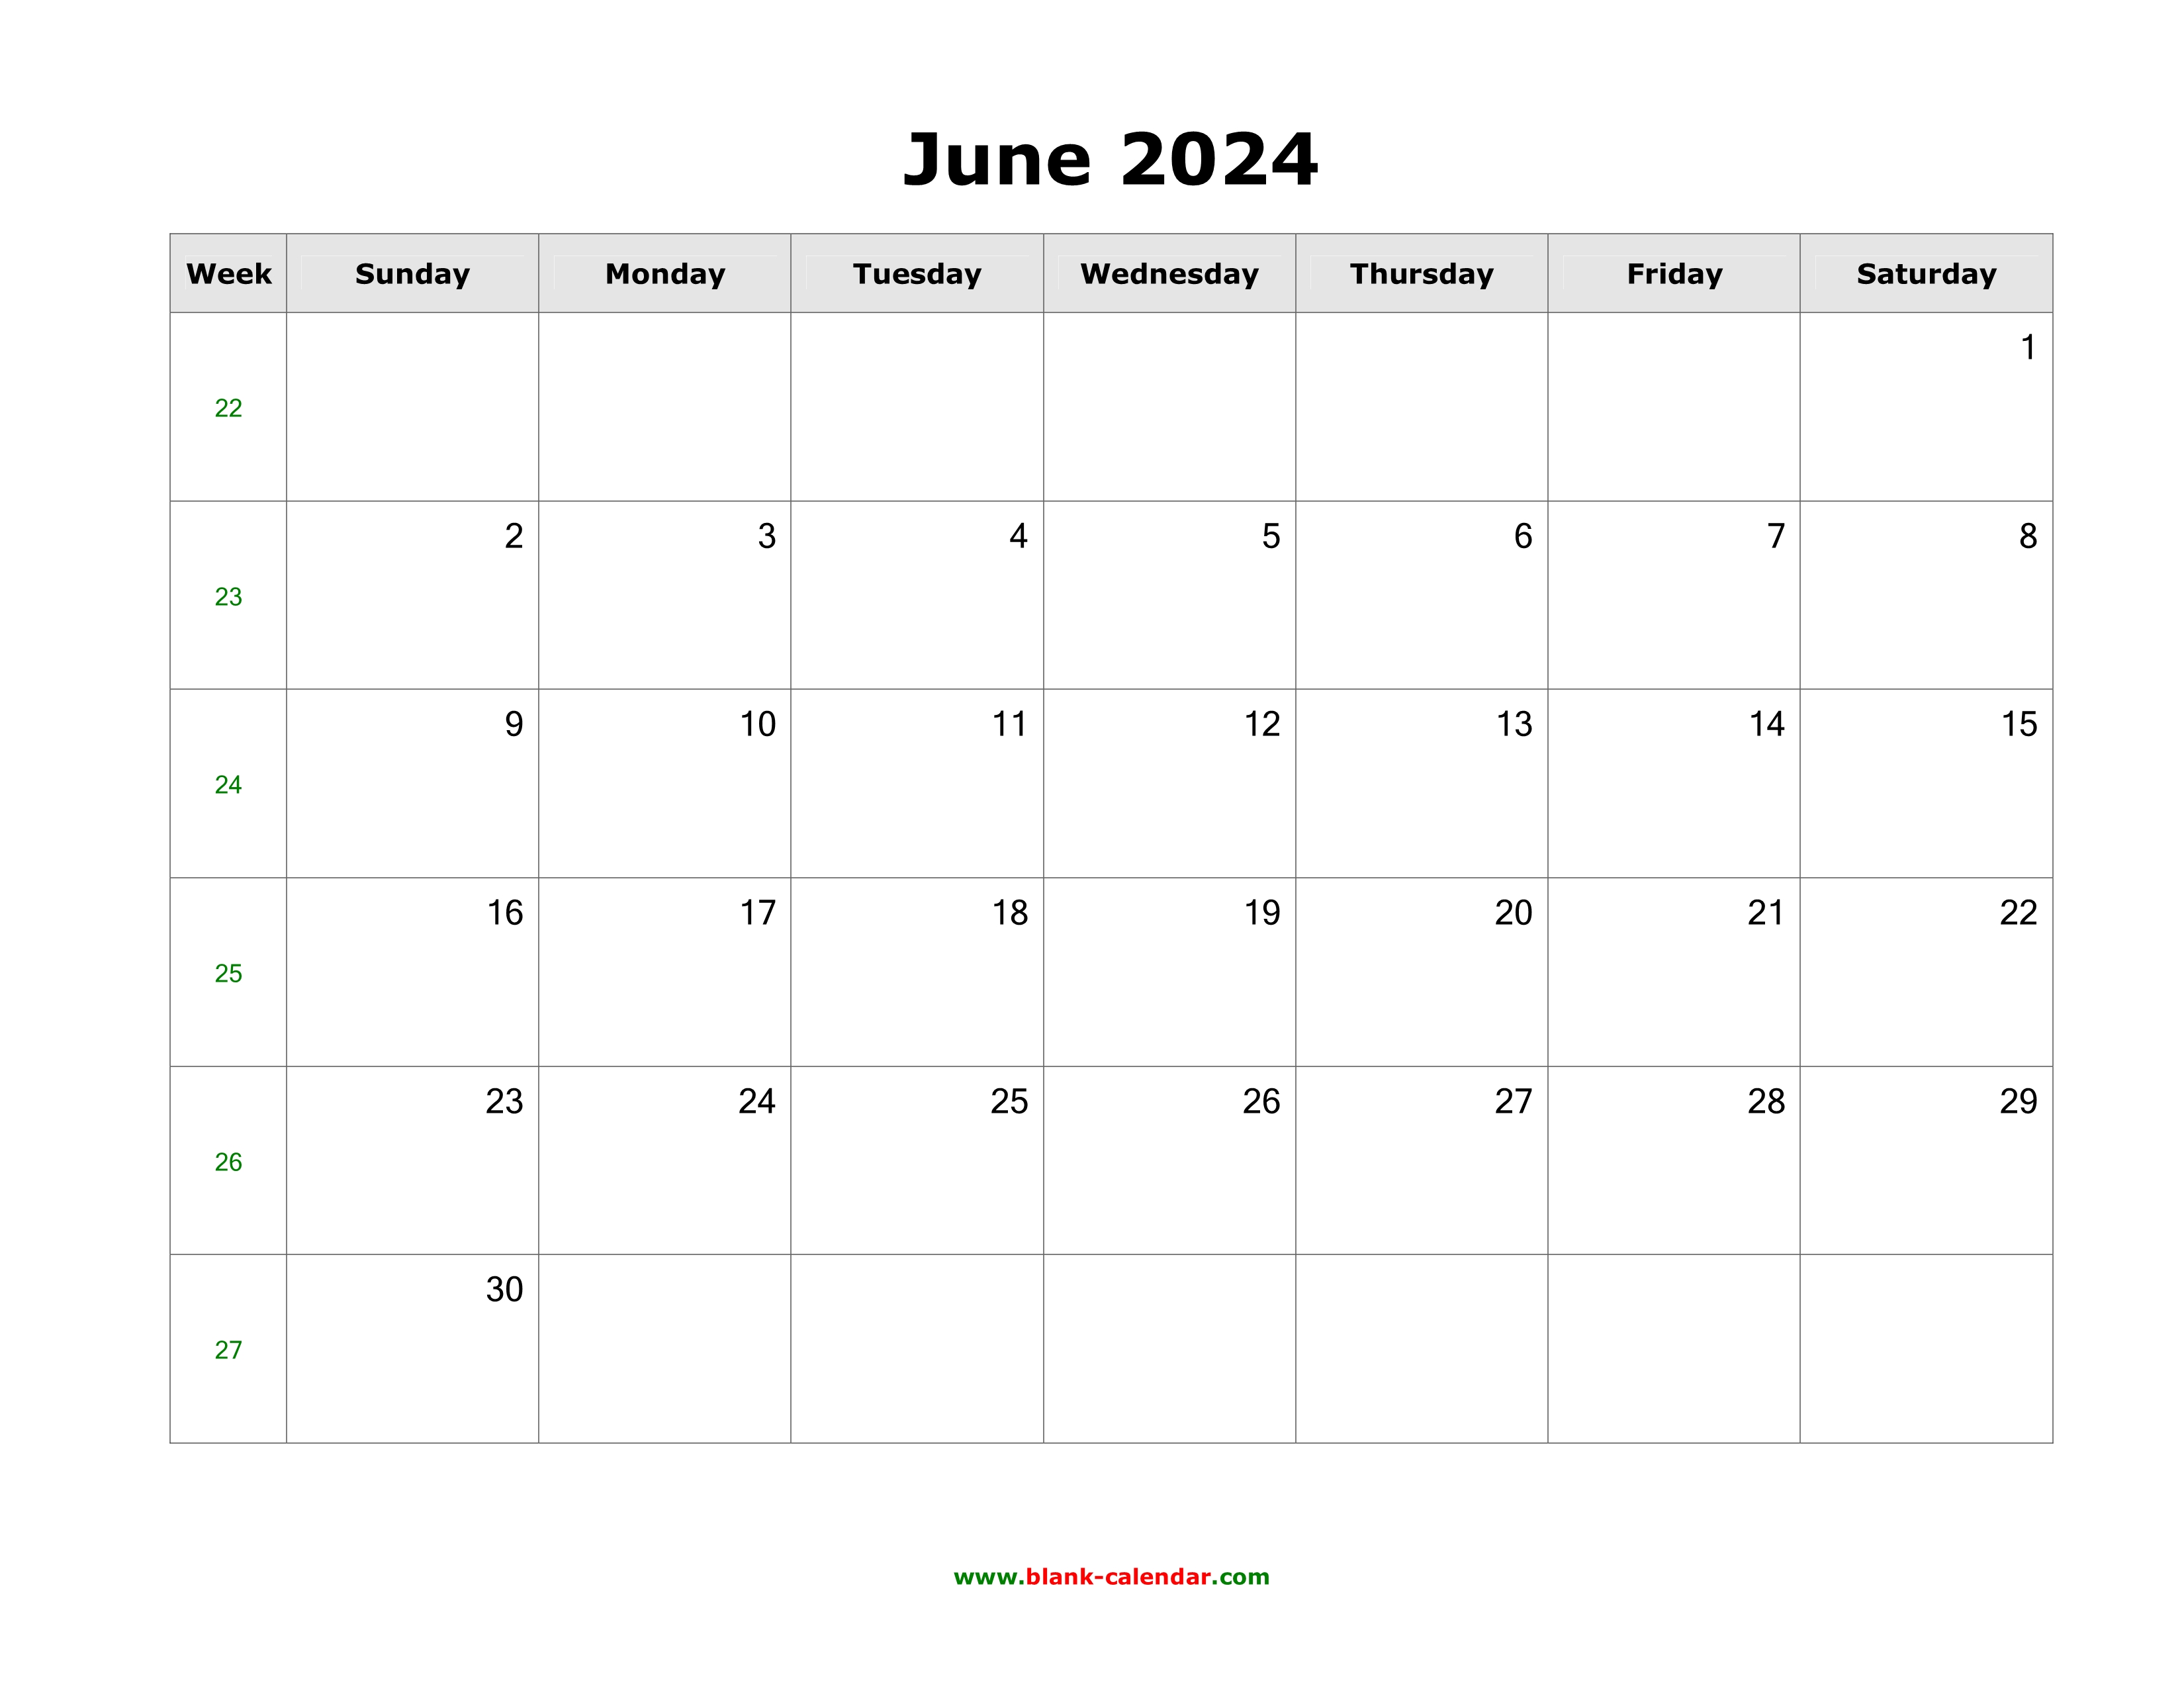 June 2024 Blank Calendar | Free Download Calendar Templates